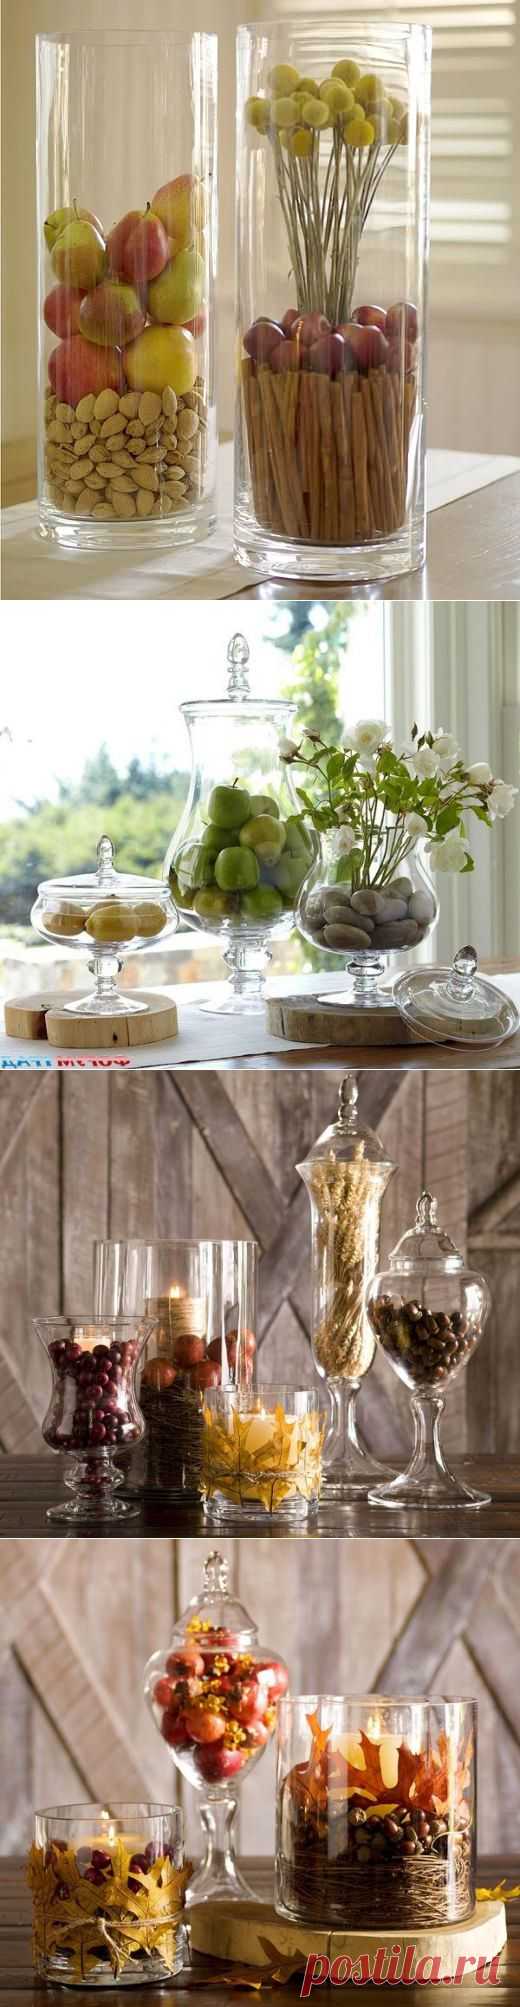 Стеклянные вазы в интерьере фото